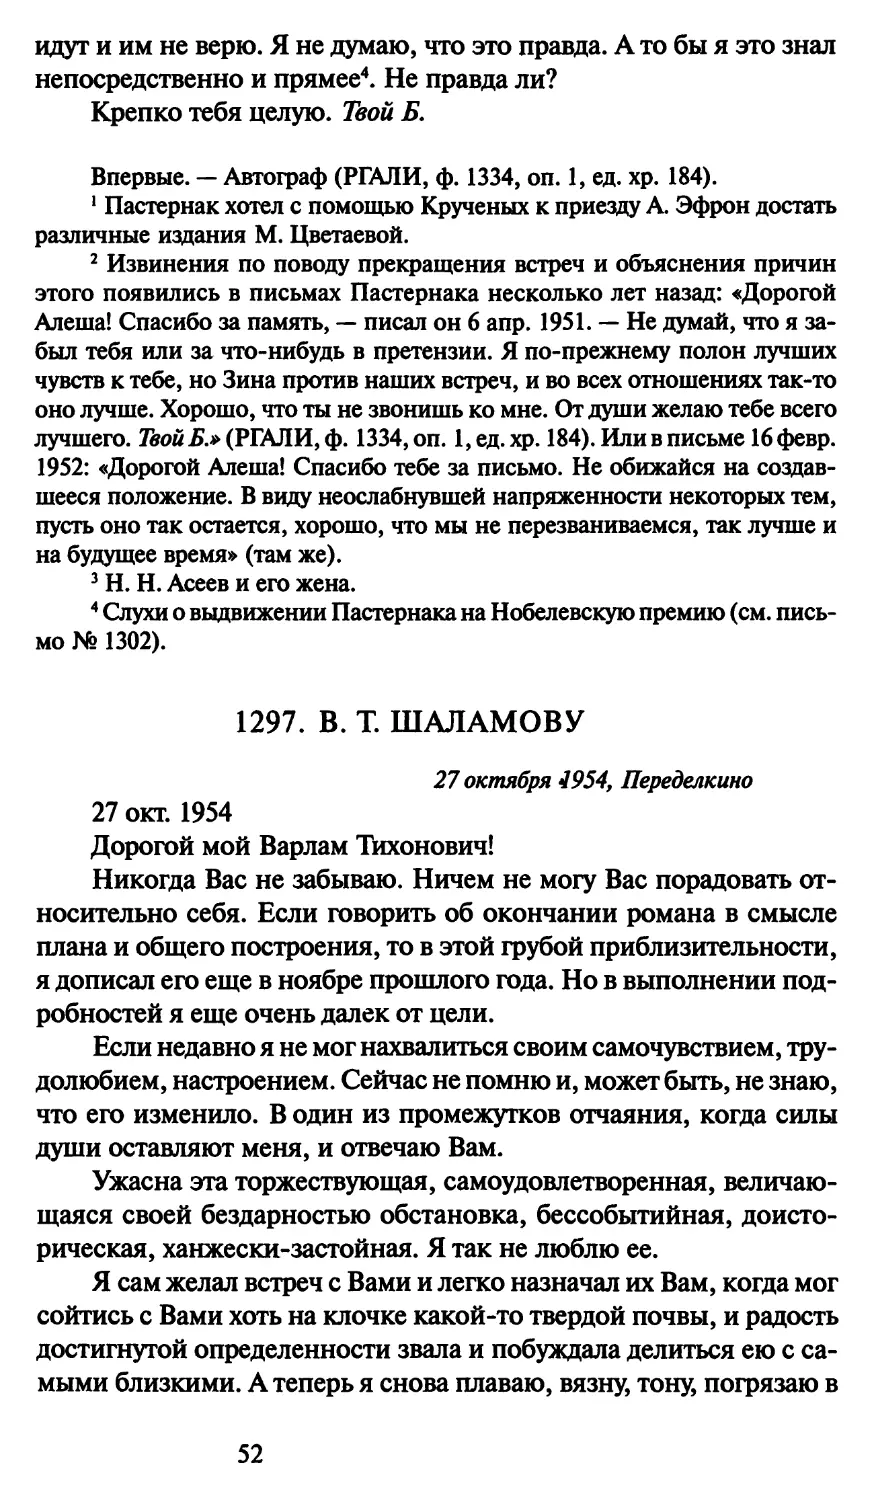 1297. В. Т. Шаламову 27 октября 1954